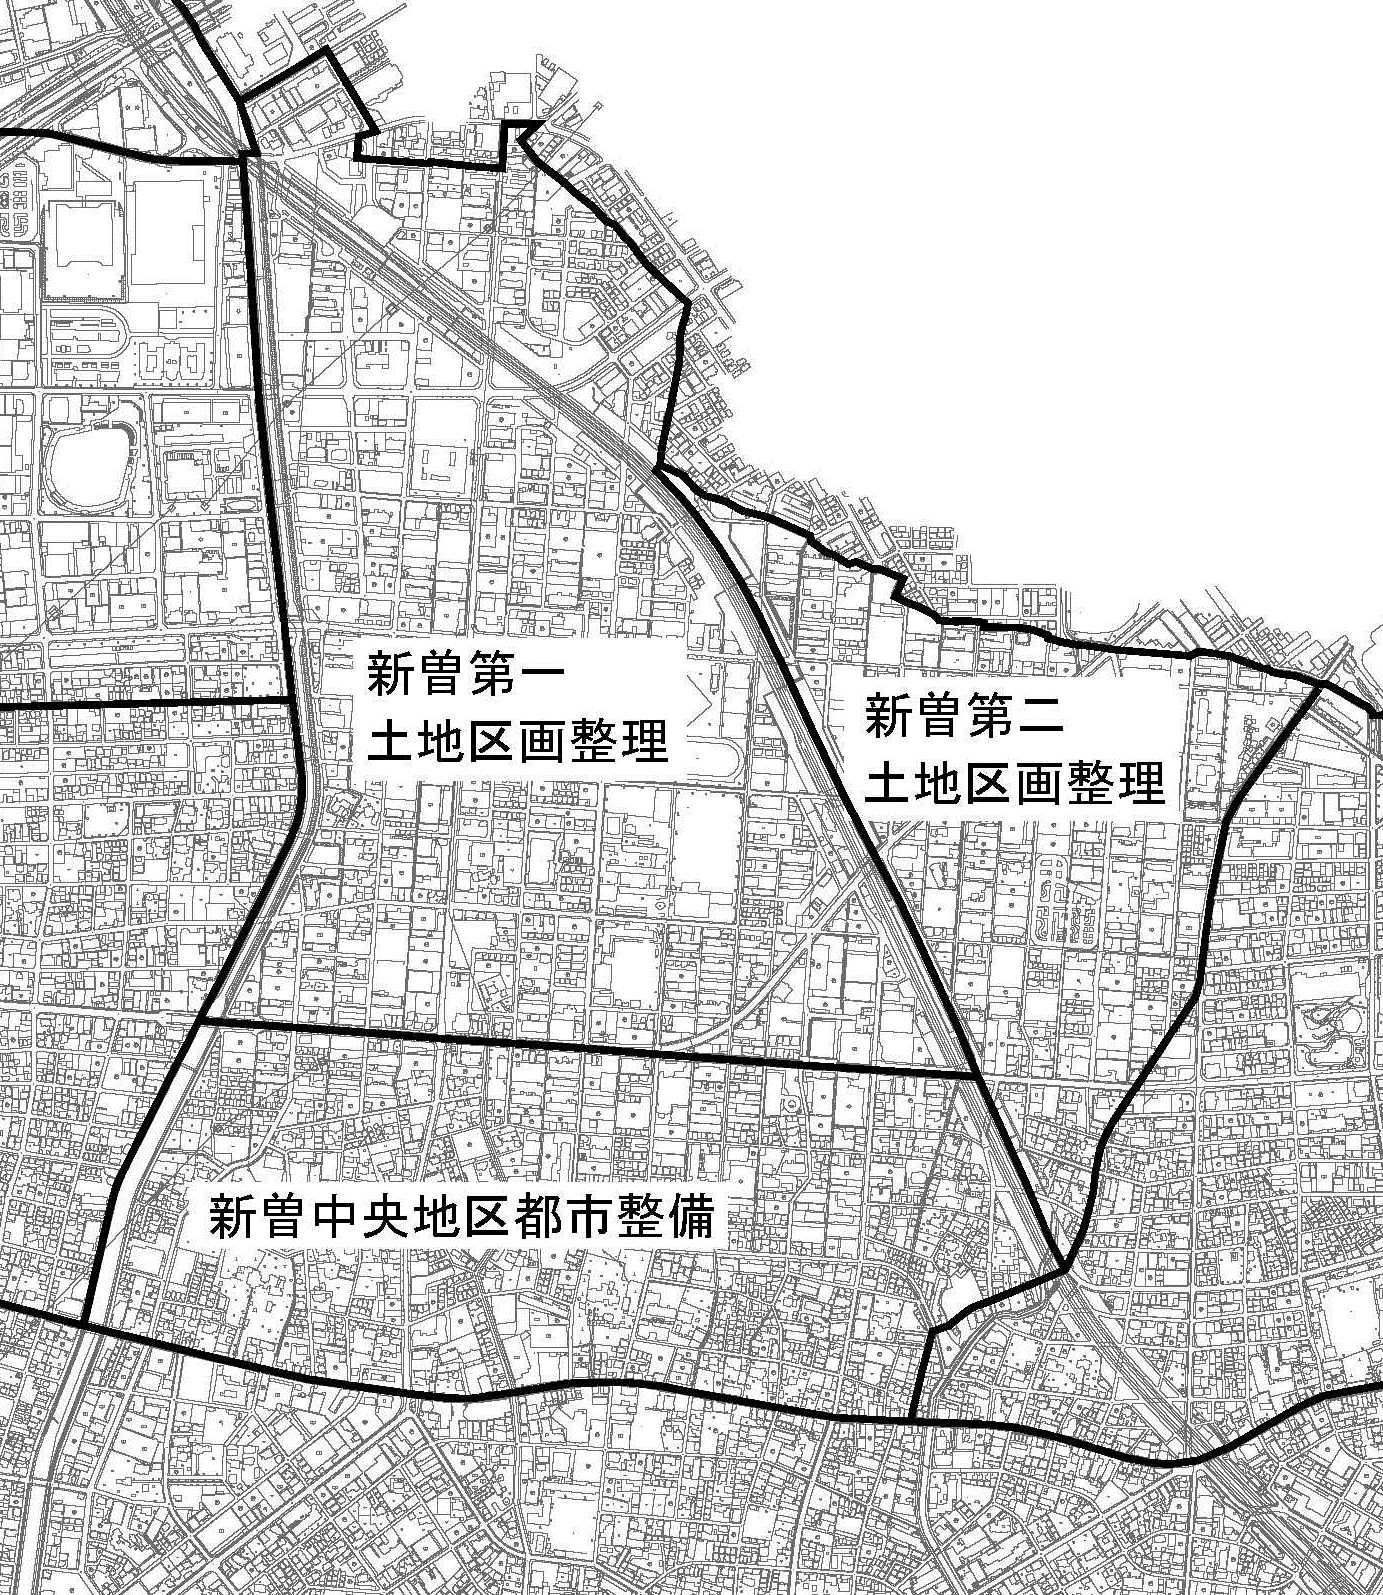 新曽地区の区画地図